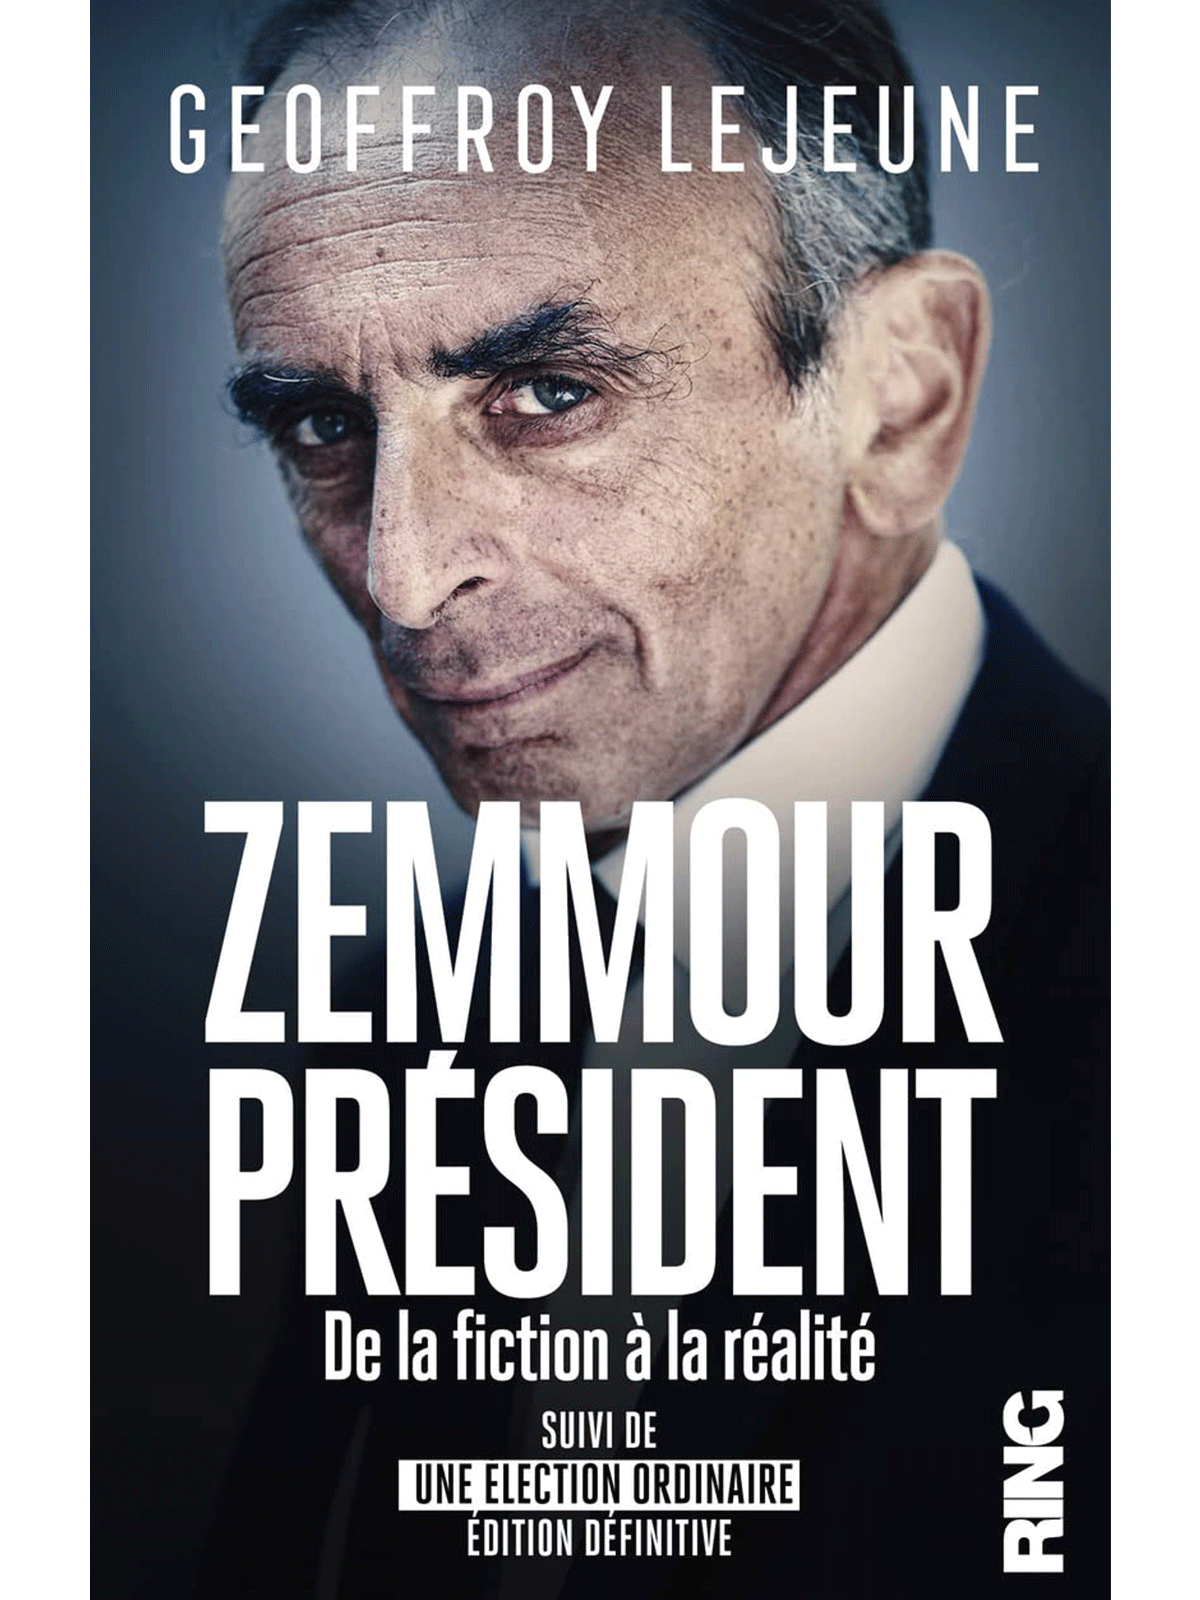 Geoffroy Lejeune : Zemmour Président, de la fiction à la réalité